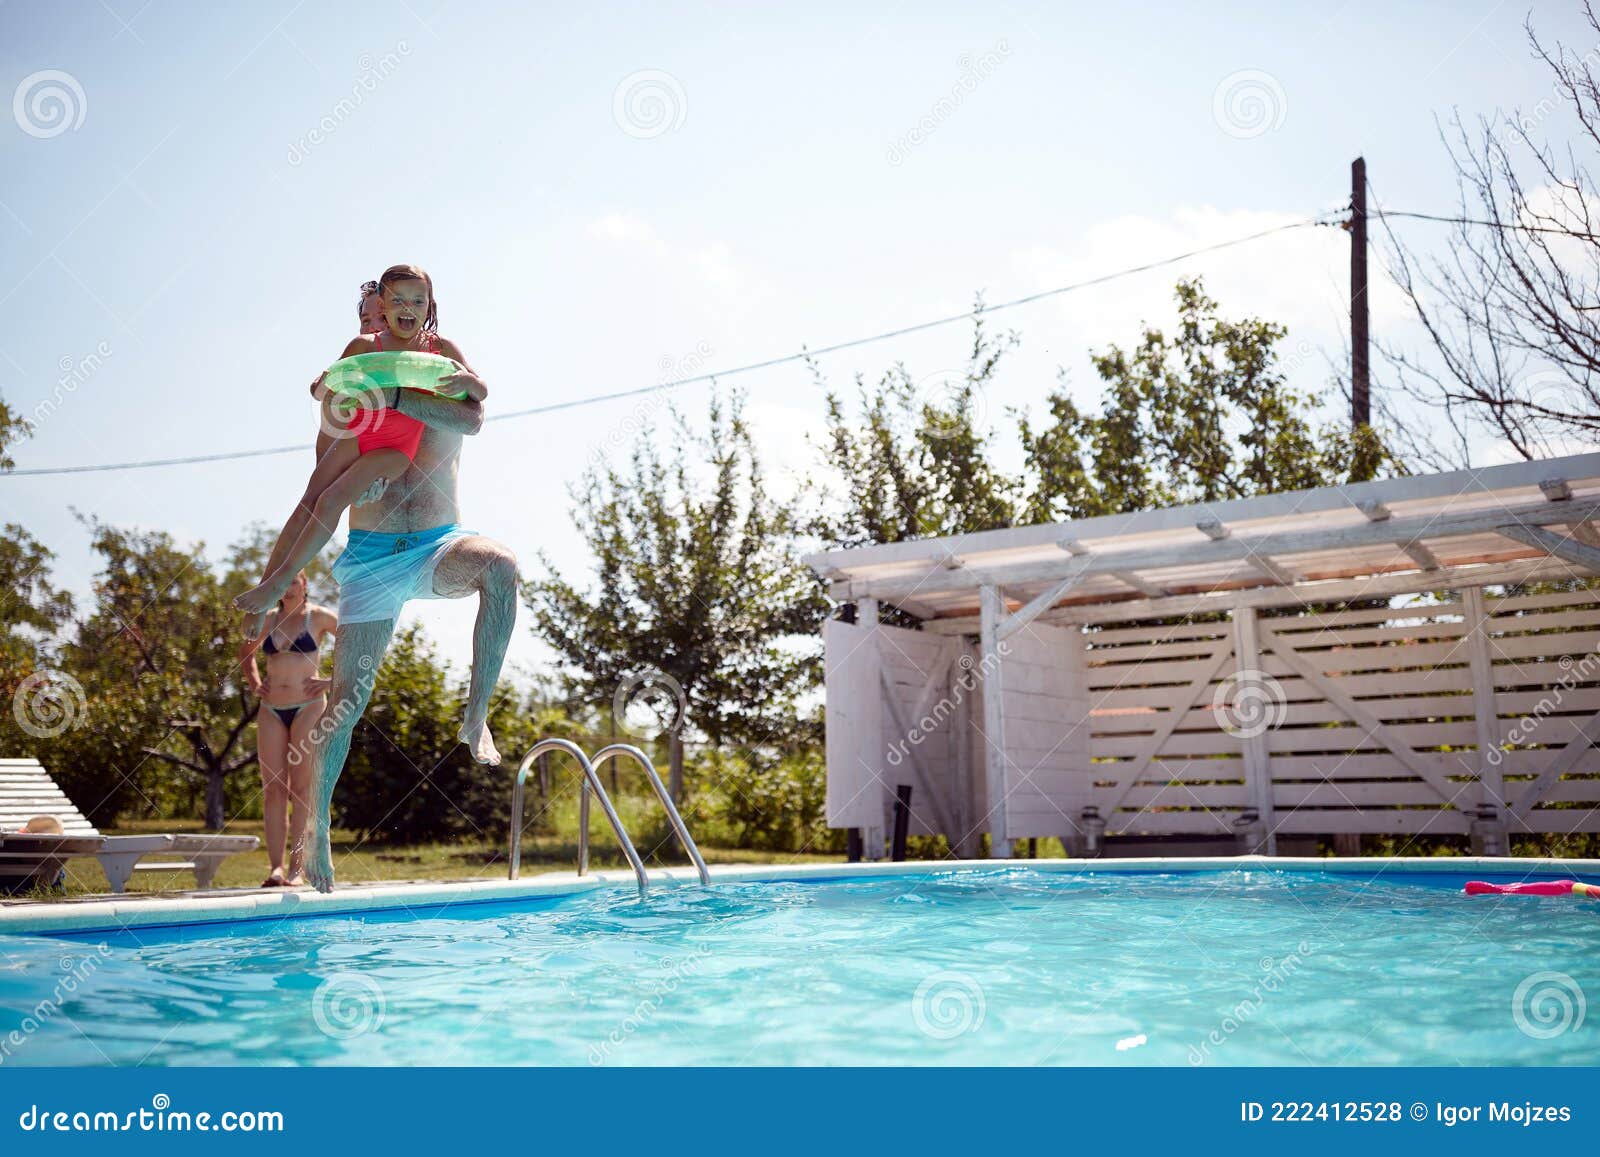 Junger Vater springt in ein Schwimmbad mit seiner Tochter in den Armen